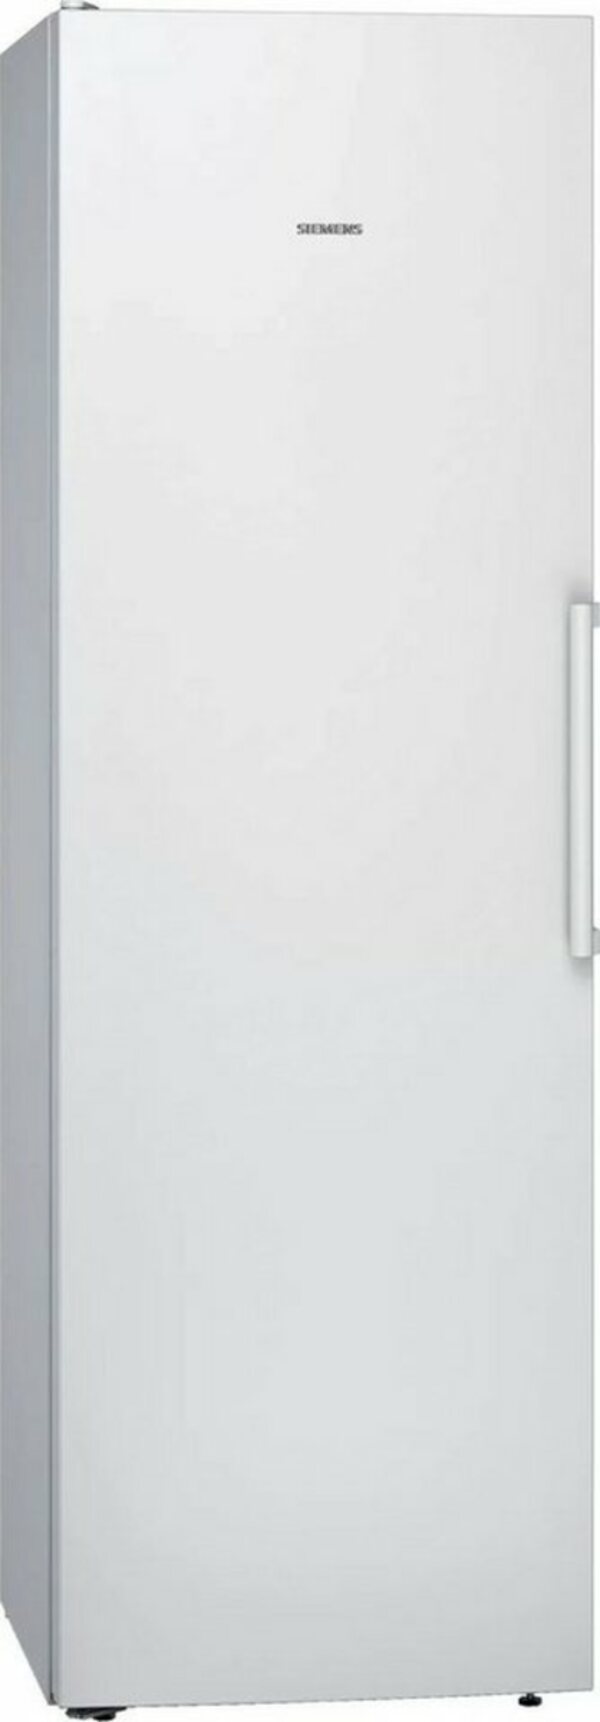 Bild 1 von SIEMENS Kühlschrank iQ300 KS36VVWEP, 186 cm hoch, 60 cm breit